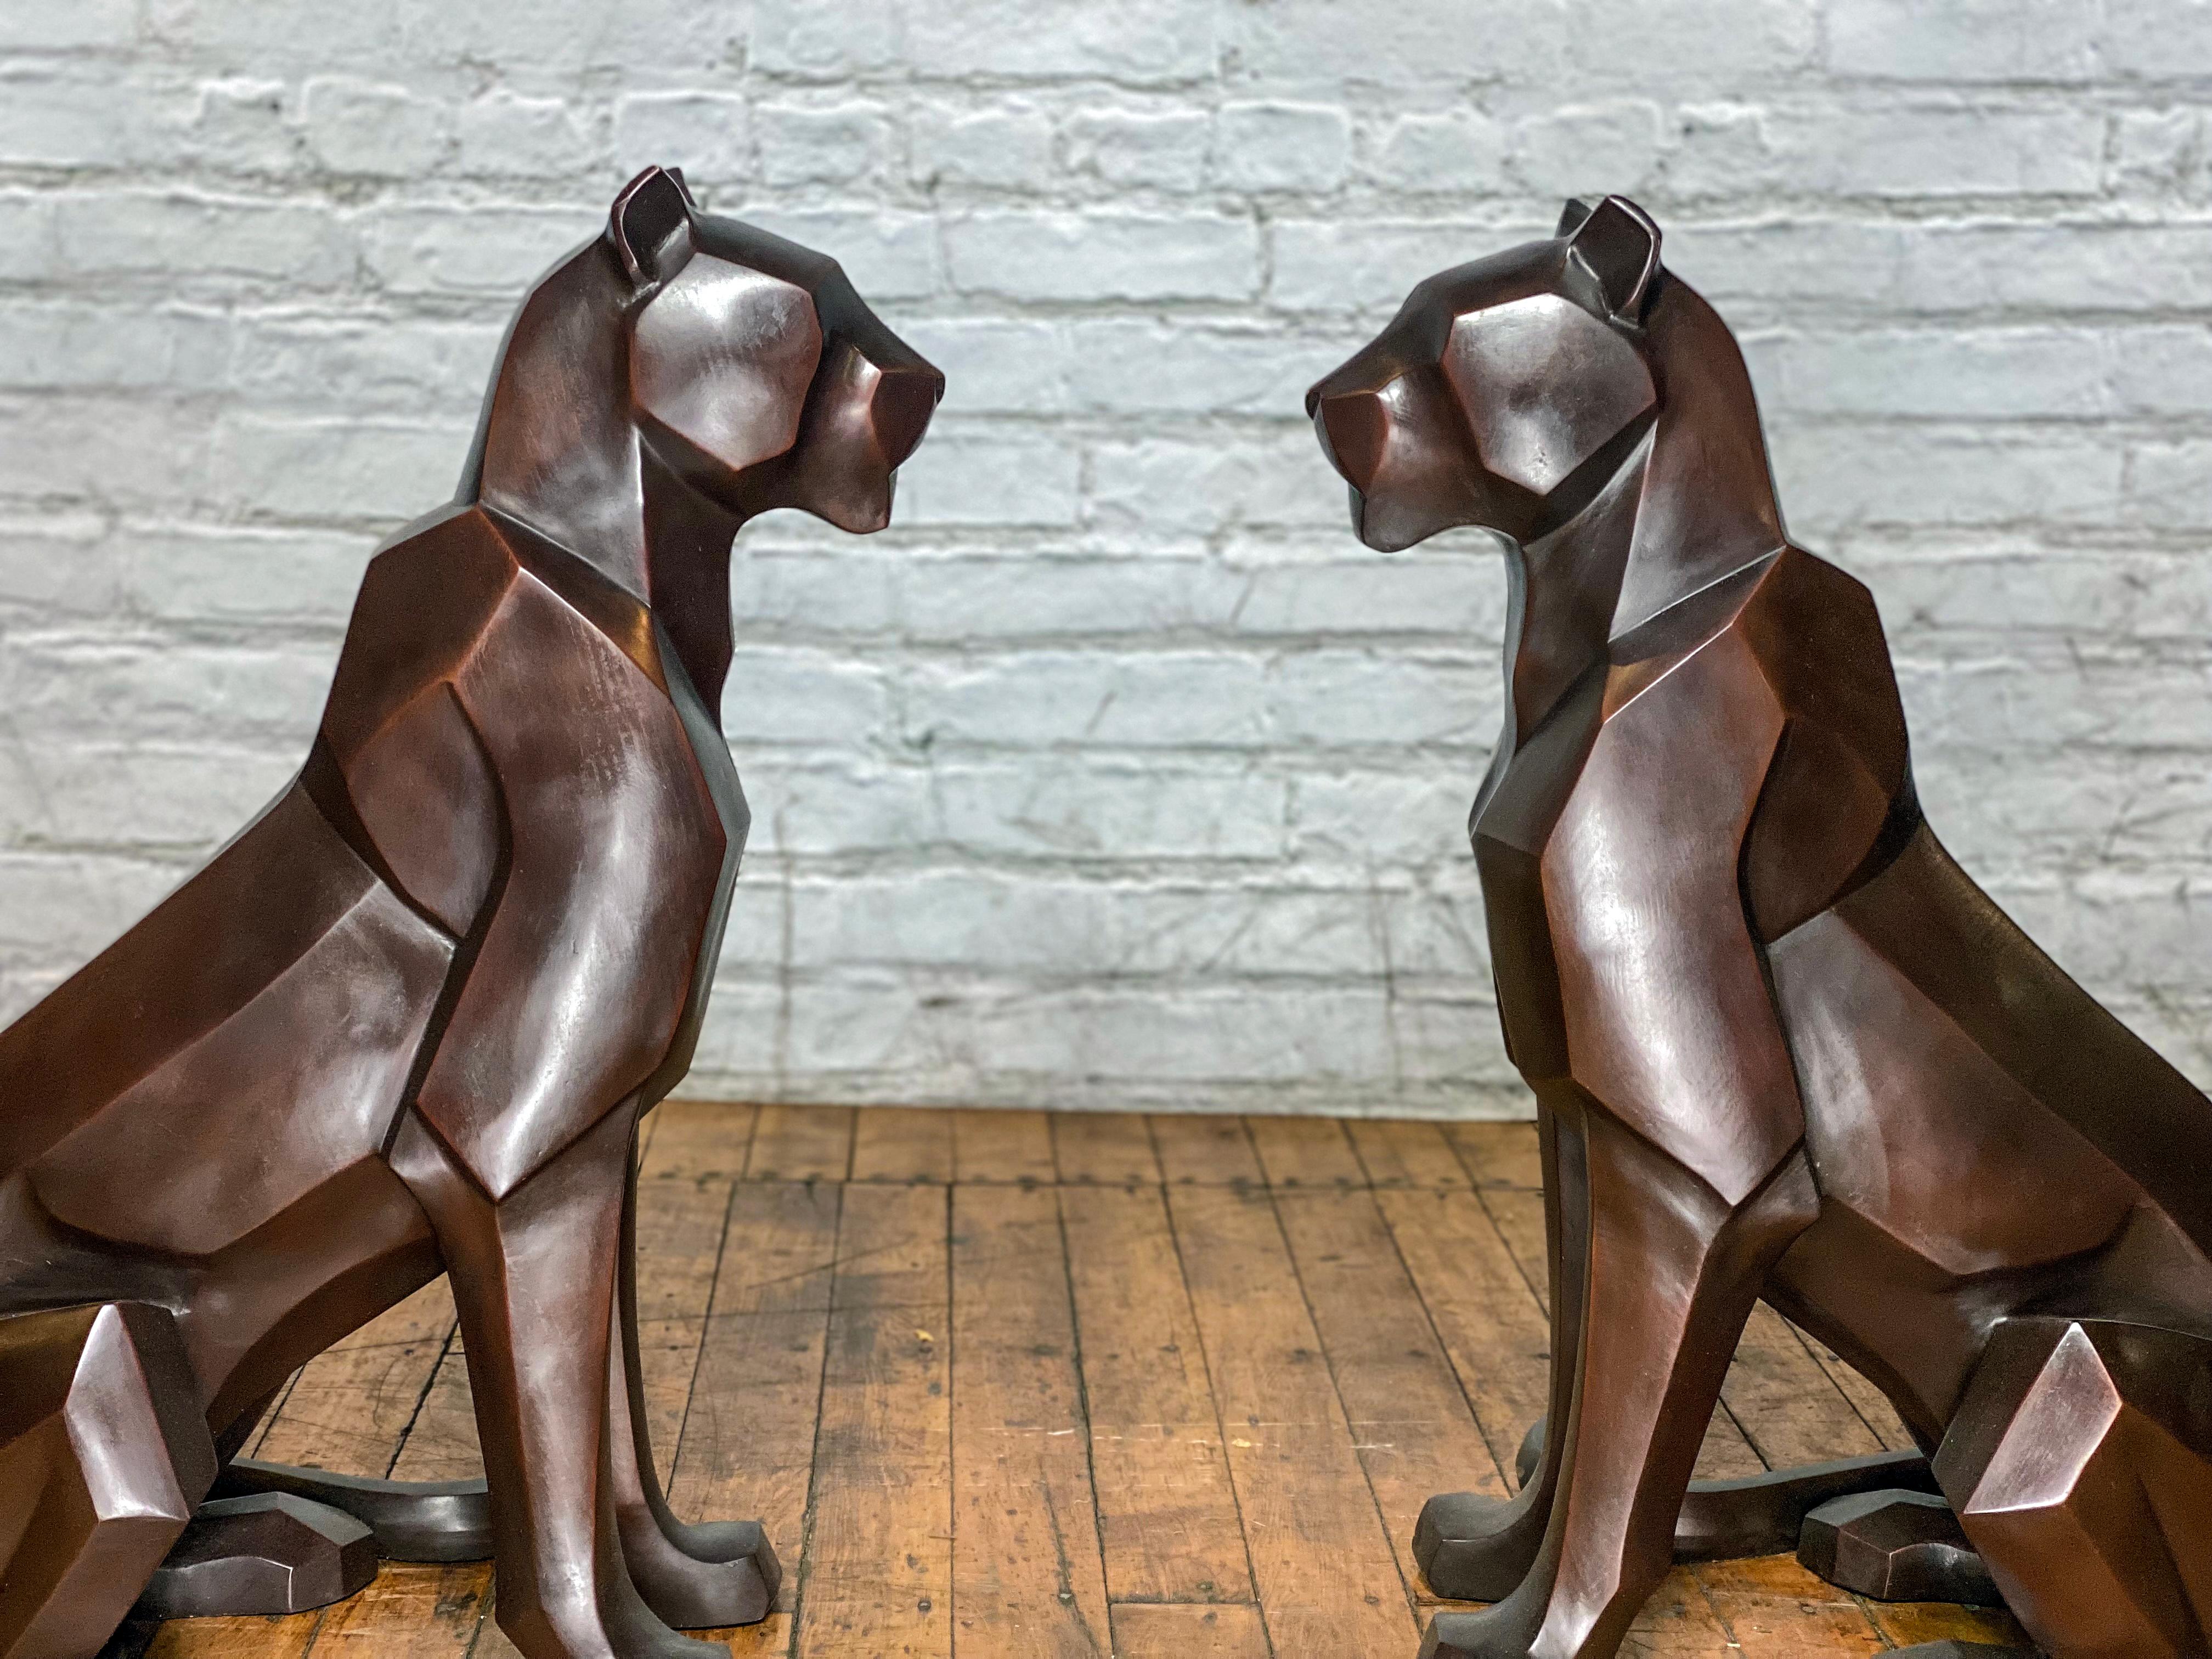 Eine atemberaubende und moderne Ergänzung zu unserer Bronzetier-Kollektion ist unser Paar Berglöwen aus wachsbeschichteter Bronze. Diese auffälligen Bronzestatuen für Berglöwen wurden nach einer Originalform entworfen und gegossen, die einzigartige